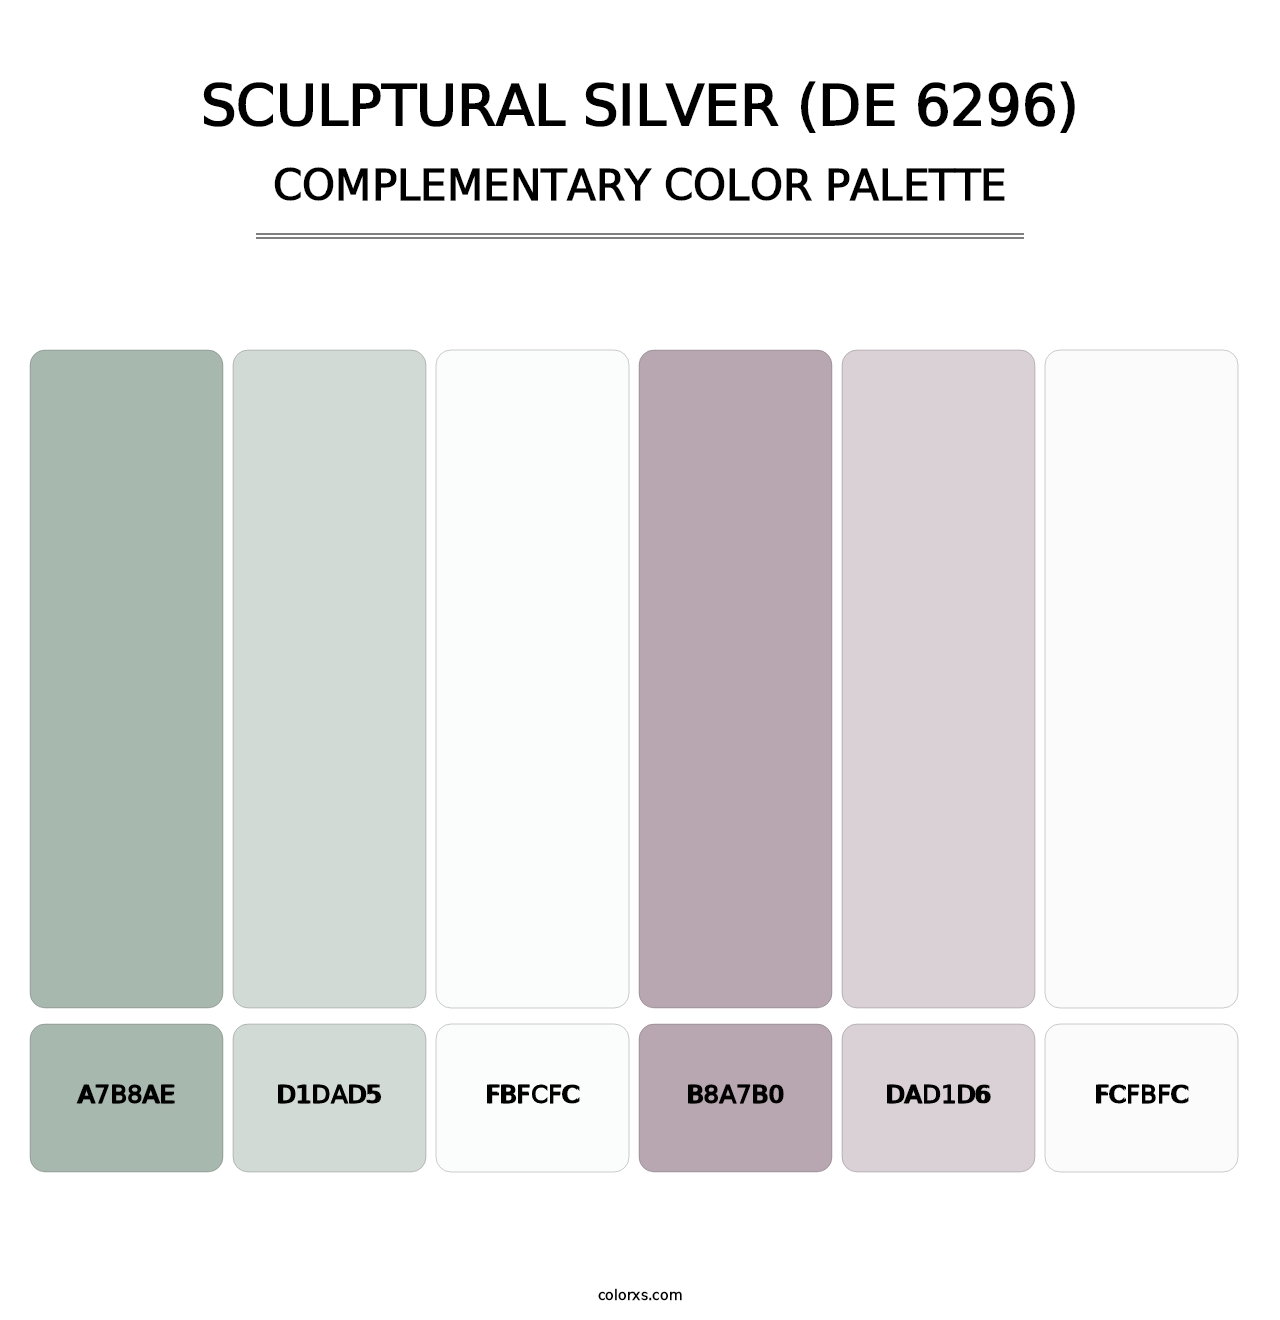 Sculptural Silver (DE 6296) - Complementary Color Palette